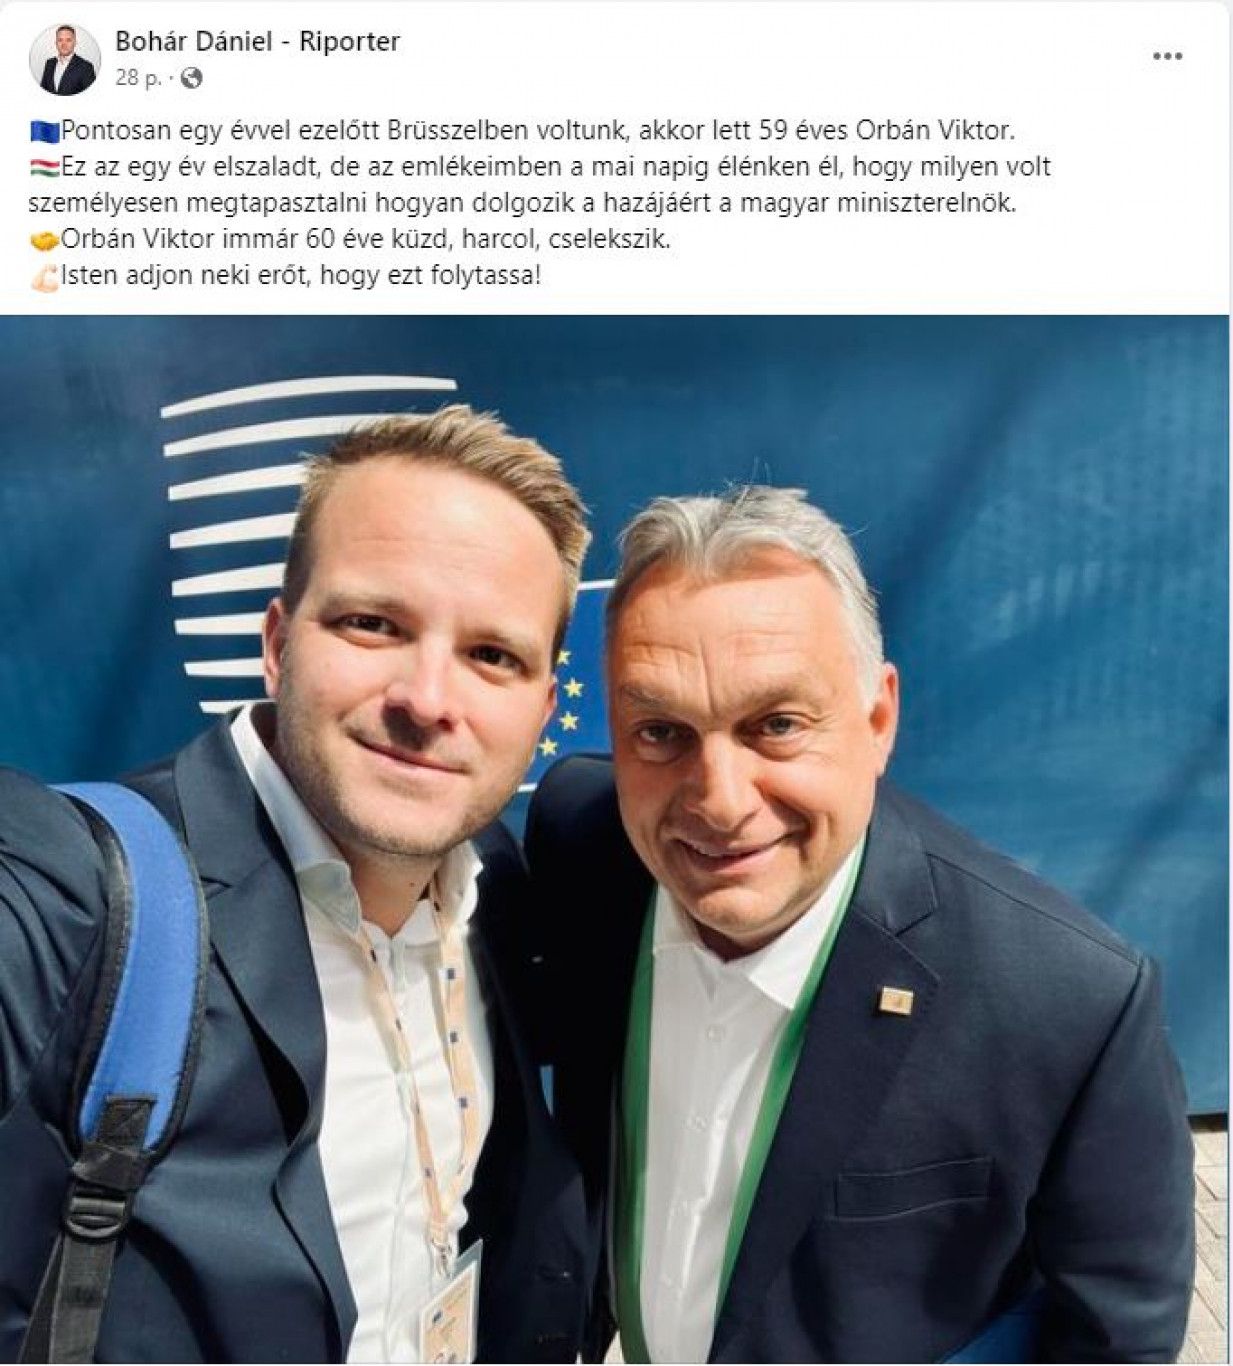 "Isten éltesse a vezért!" – Ma 60 éves Orbán Viktor, hálaadó szentmisét is tartanak a szülinapos kormányfőért – A Megafon sztárjának köszöntését törölték 